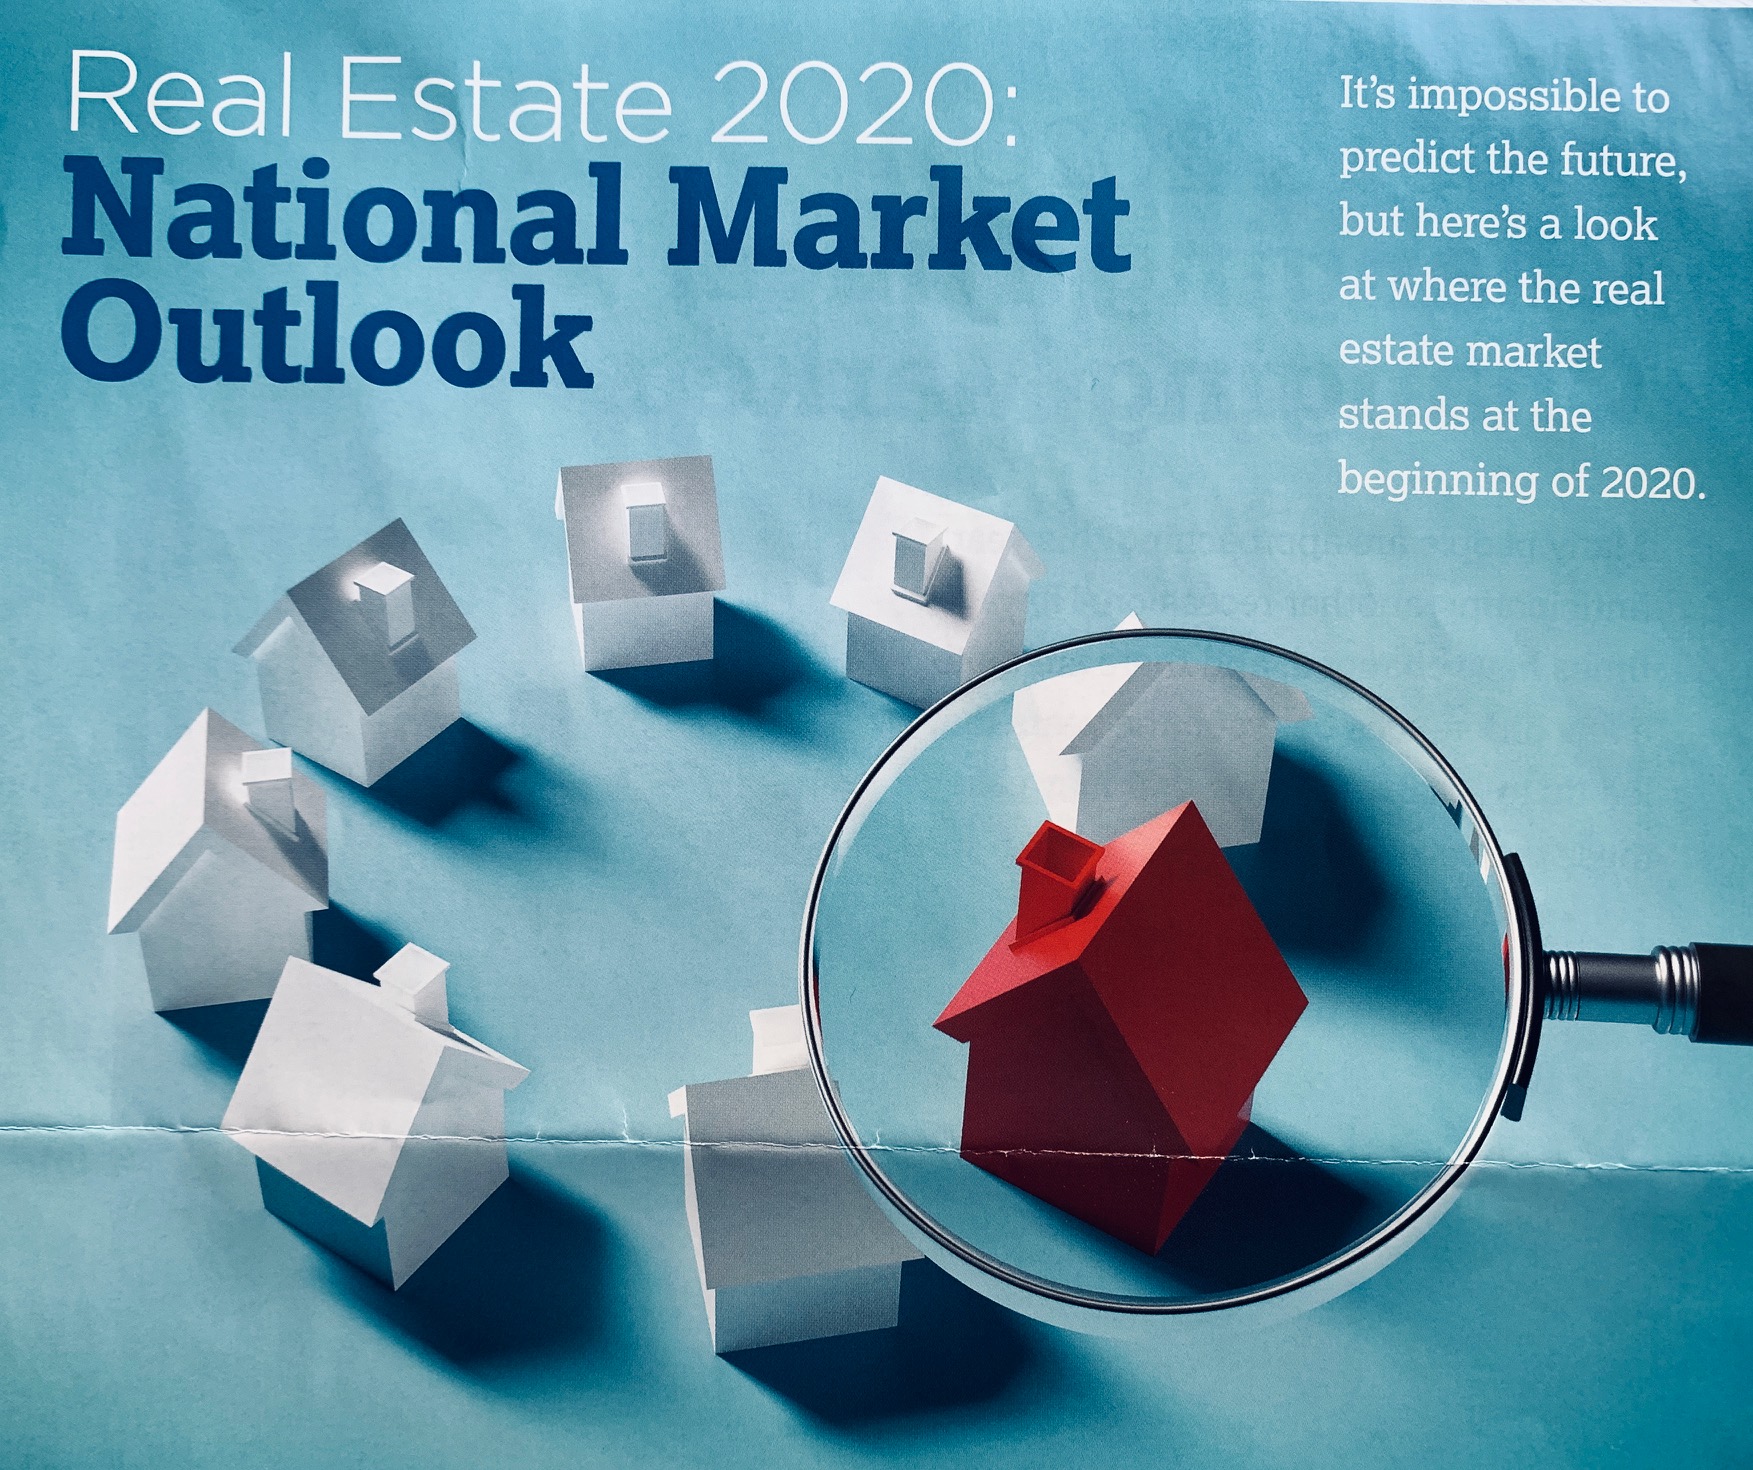 Real Estate 2020 Market